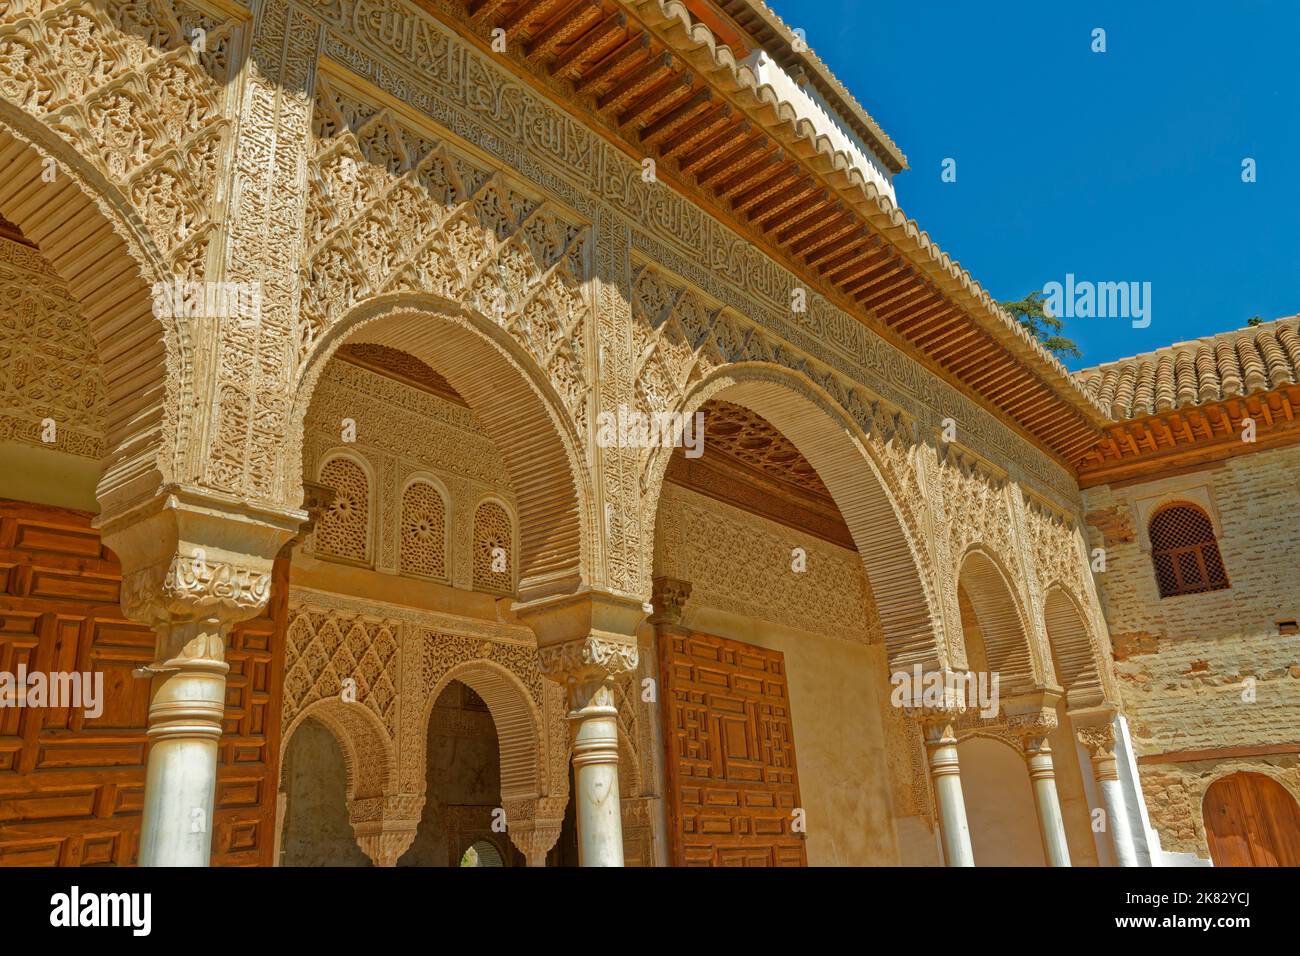 Détail architectural des bâtiments du Palais dans les jardins du Generalife au complexe du palais de l'Alhambra à Grenade, Espagne. Banque D'Images